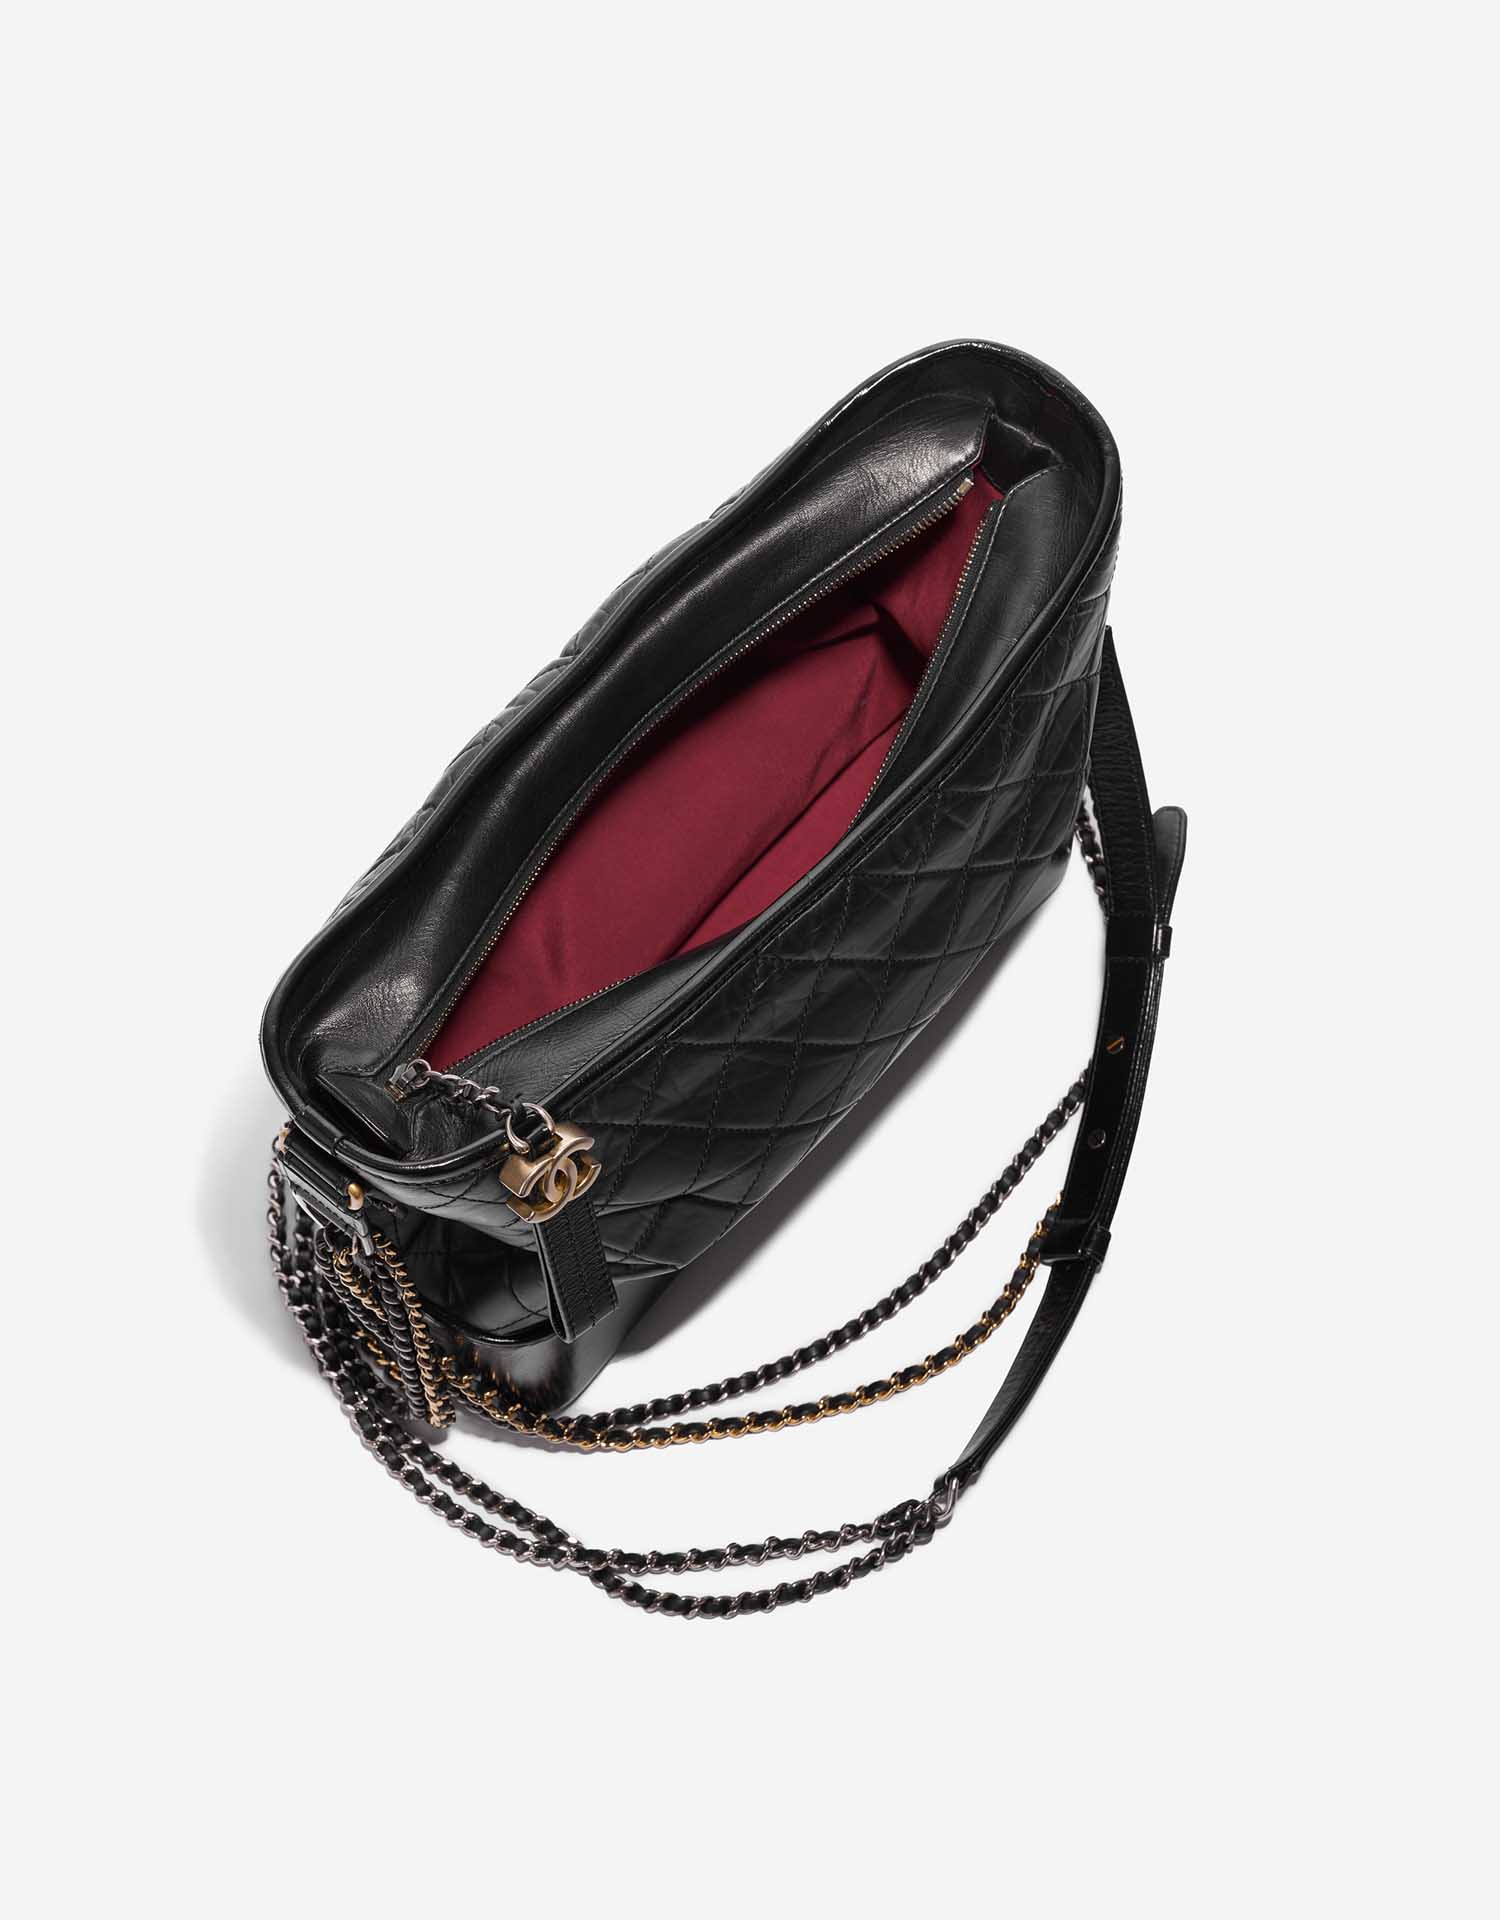 Sac Chanel d'occasion Gabrielle Grand Veau Noir Noir Intérieur | Vendez votre sac de créateur sur Saclab.com